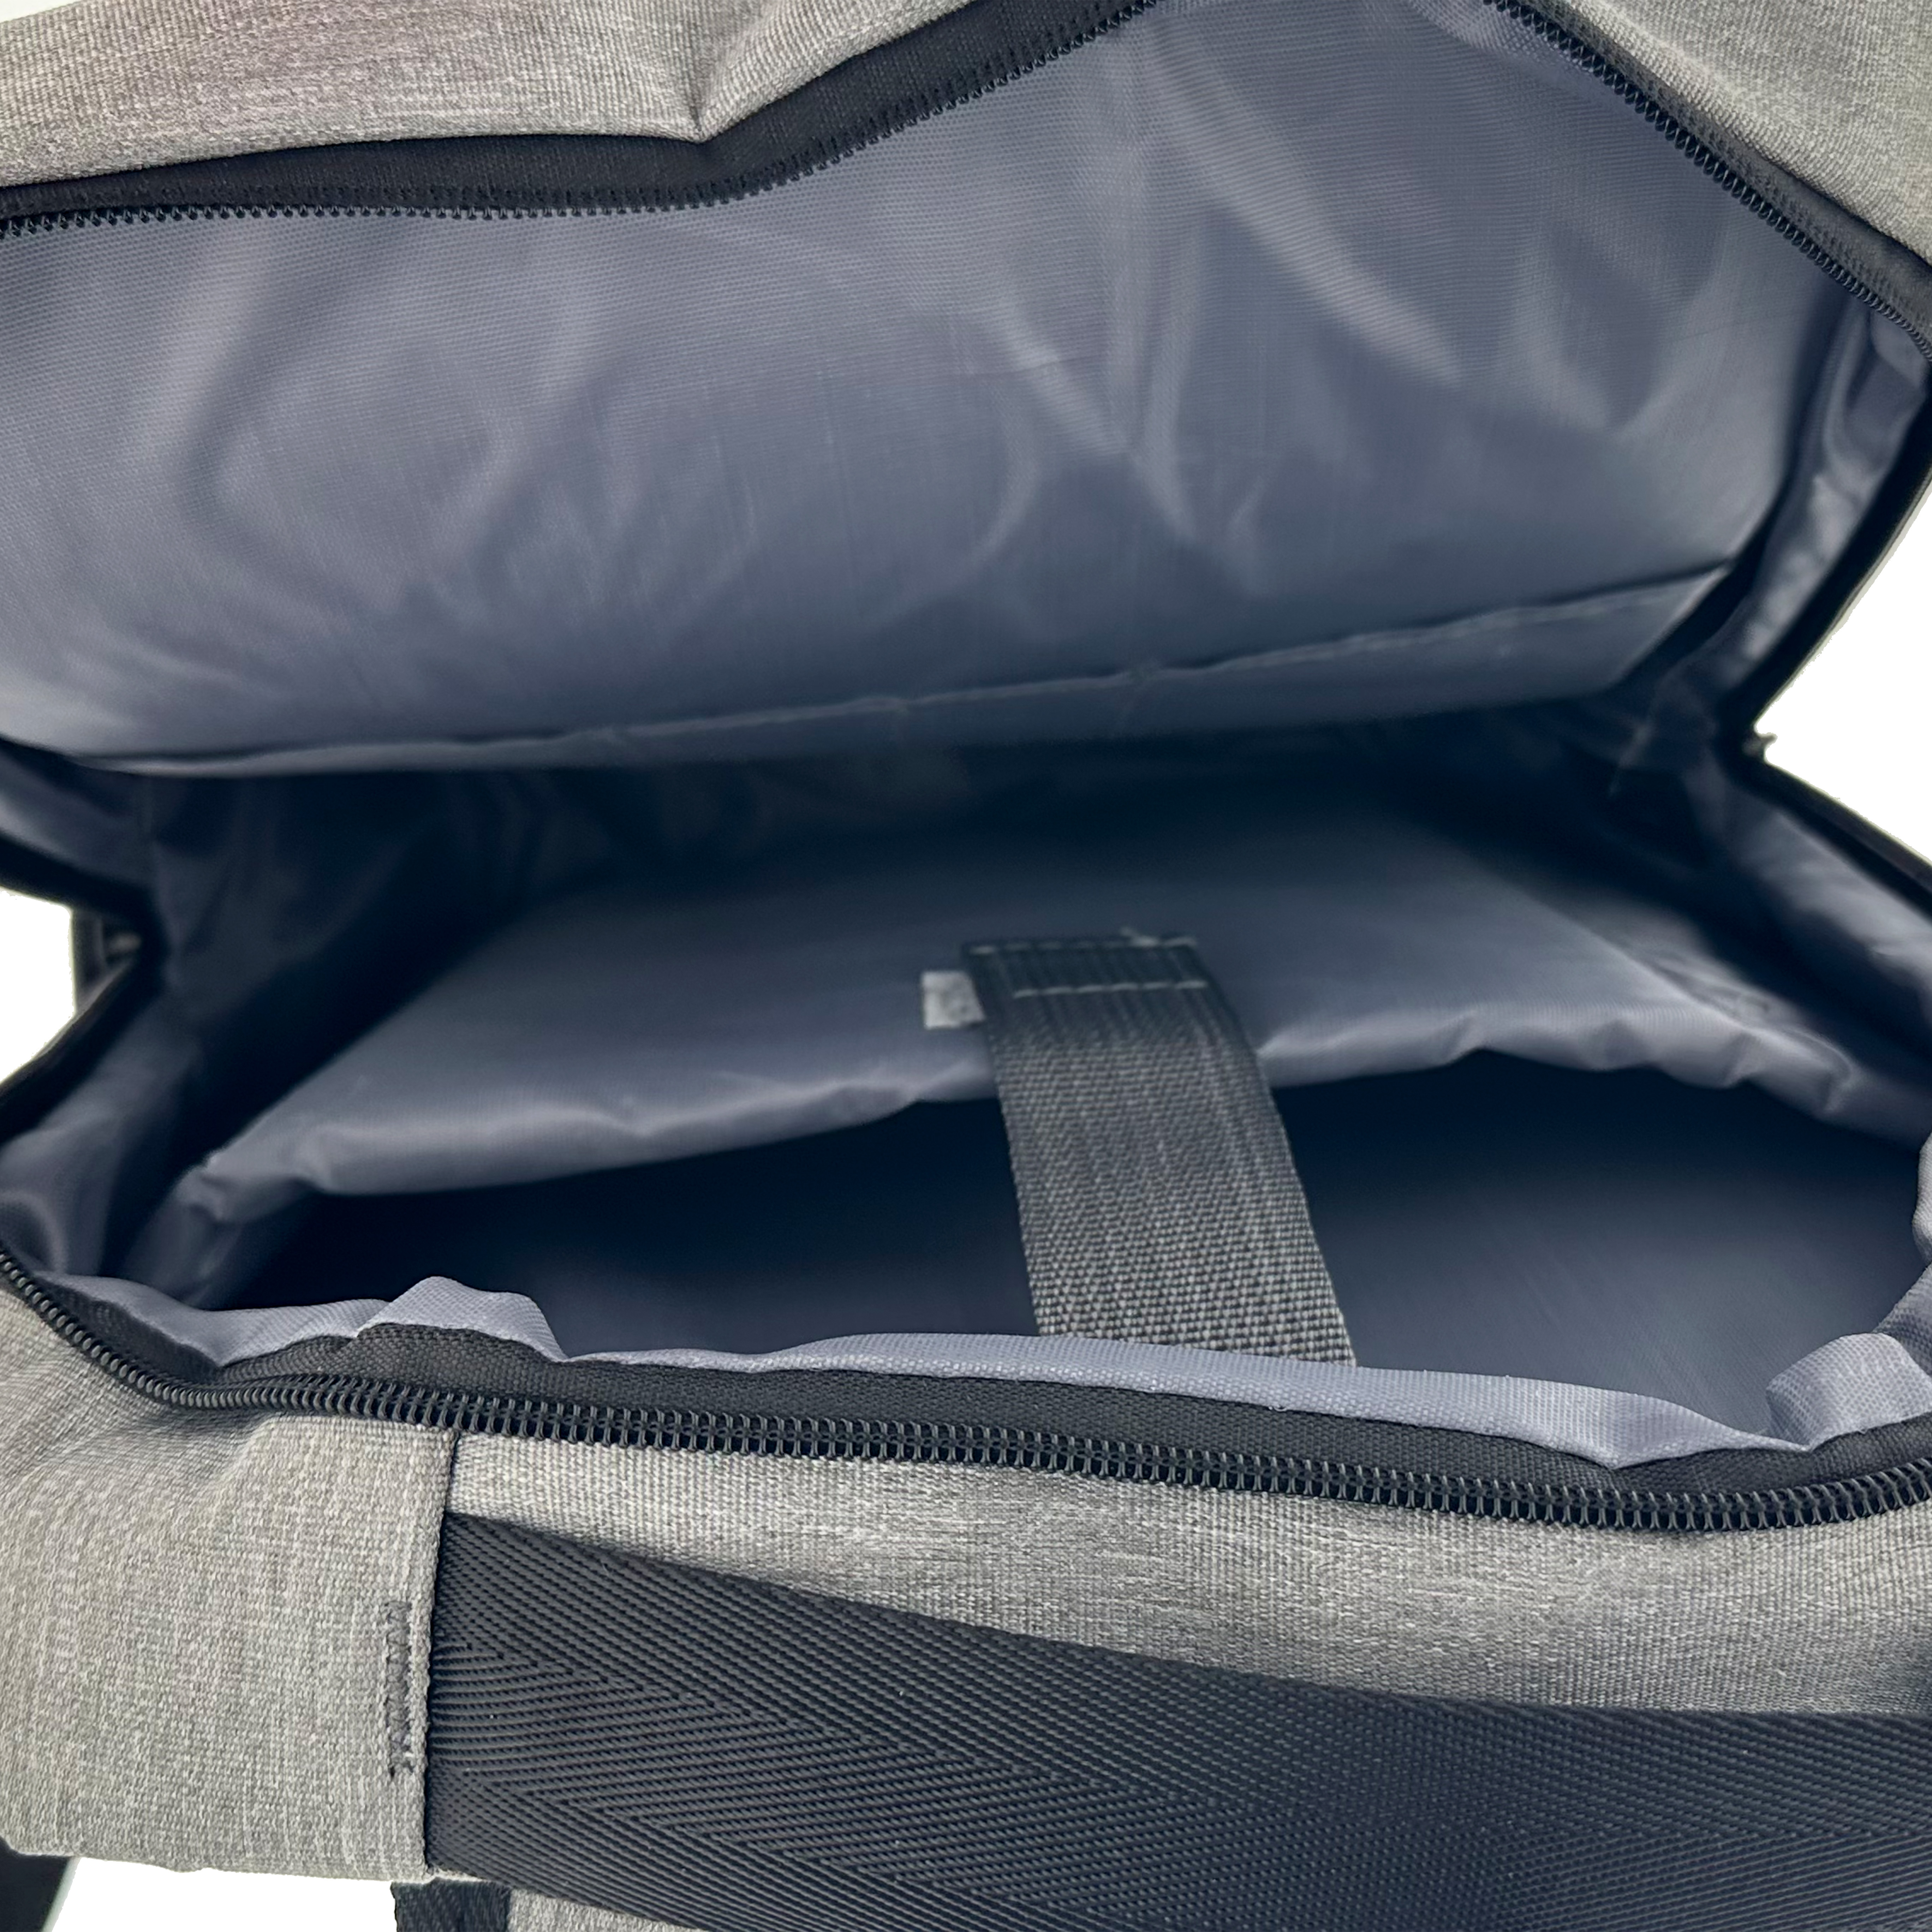 15.6 Nomad Notebook Rucksack Laptop-Rucksack für TELLUR Grey Oxford-Stoff, in